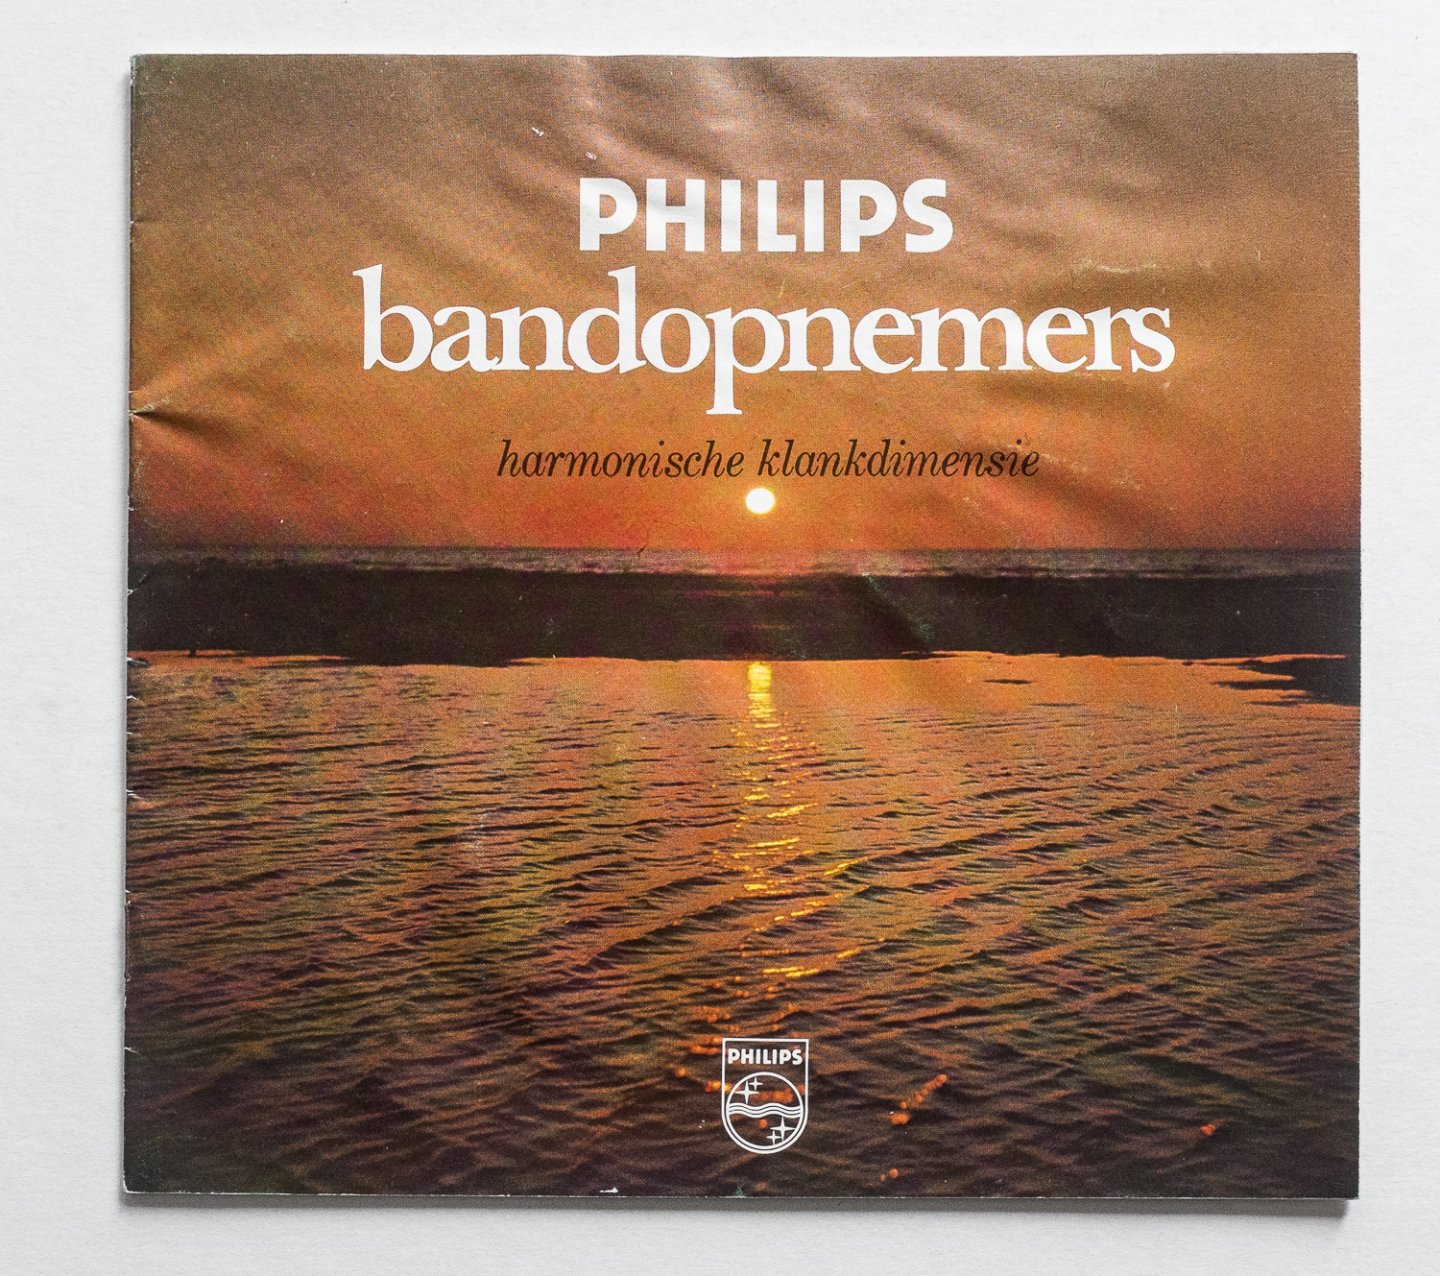 Philips Gloeilampenfabrieken Nederland n.v., Eindhoven - Philips bandopnemers - harmonische klankdimensie